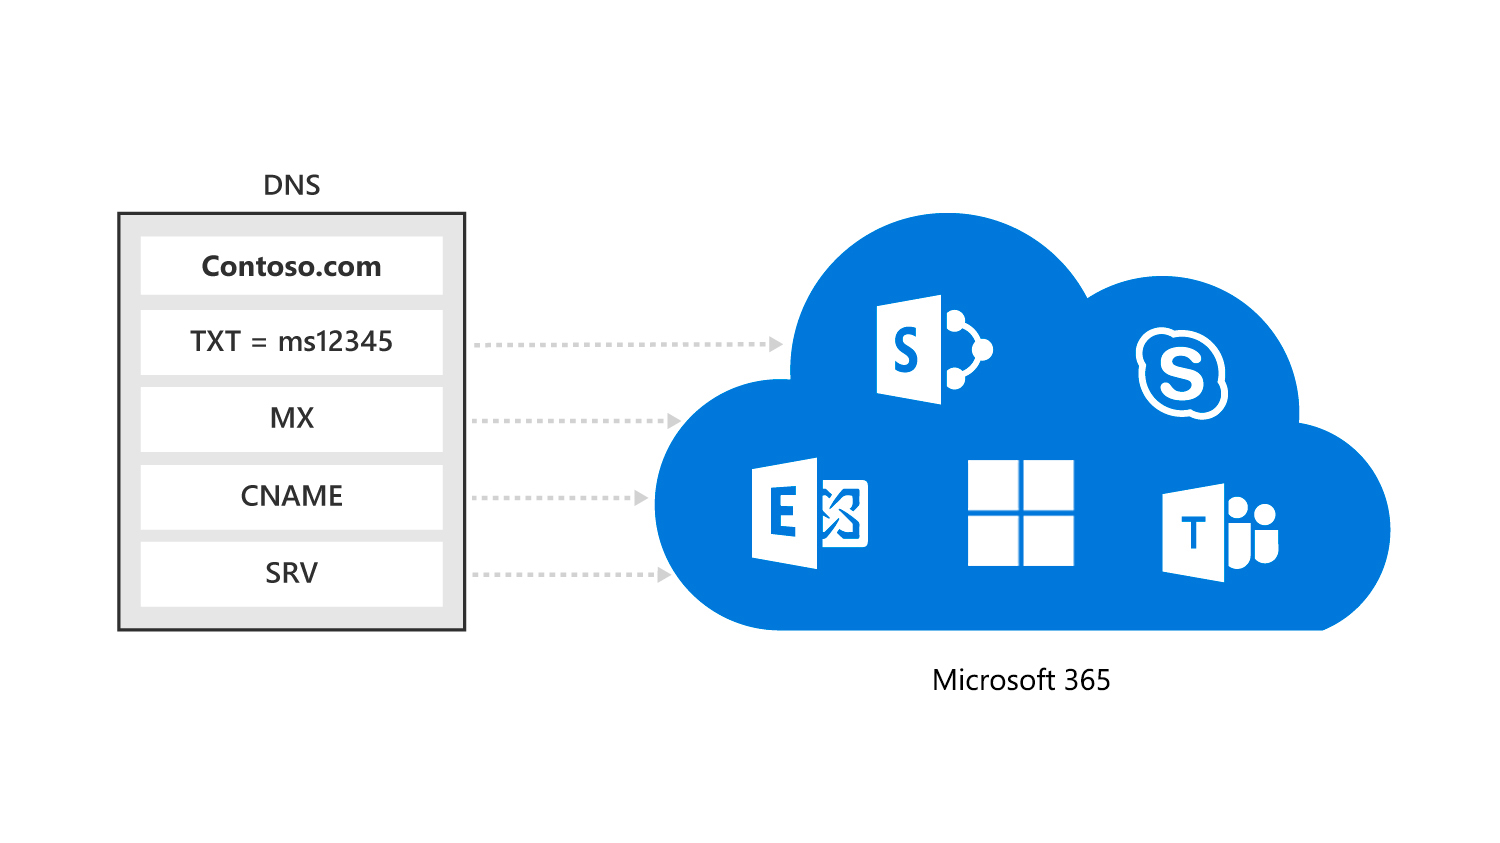 diagramme montre comment une organisation doit uniquement configurer des pointeurs vers Microsoft 365 pour utiliser leurs noms de domaine personnalisés dans Microsoft 365